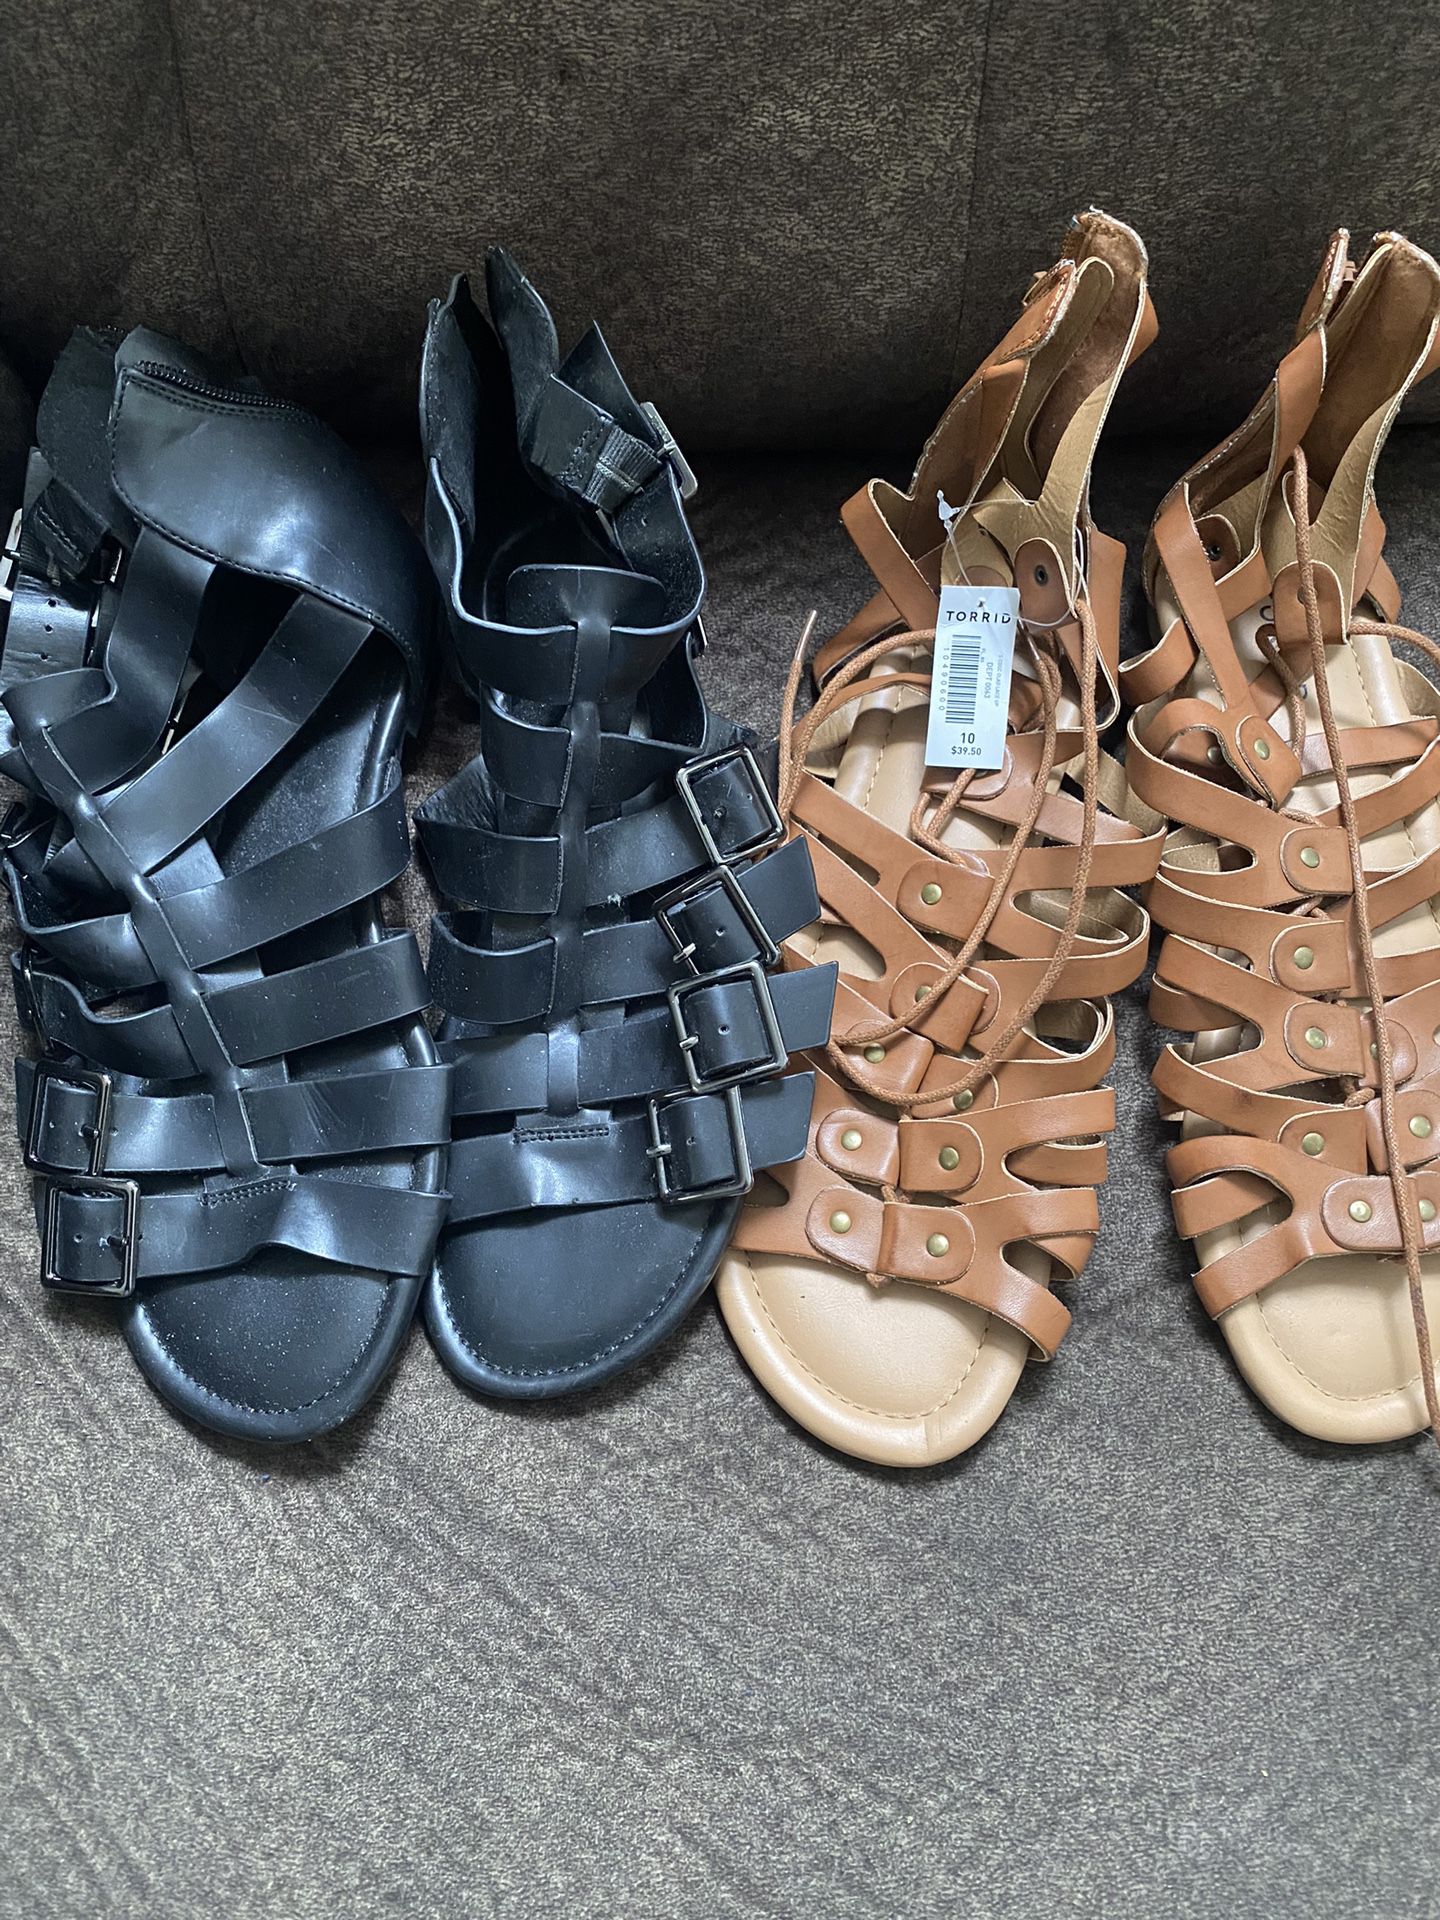 Ladies Gladiator Sandals